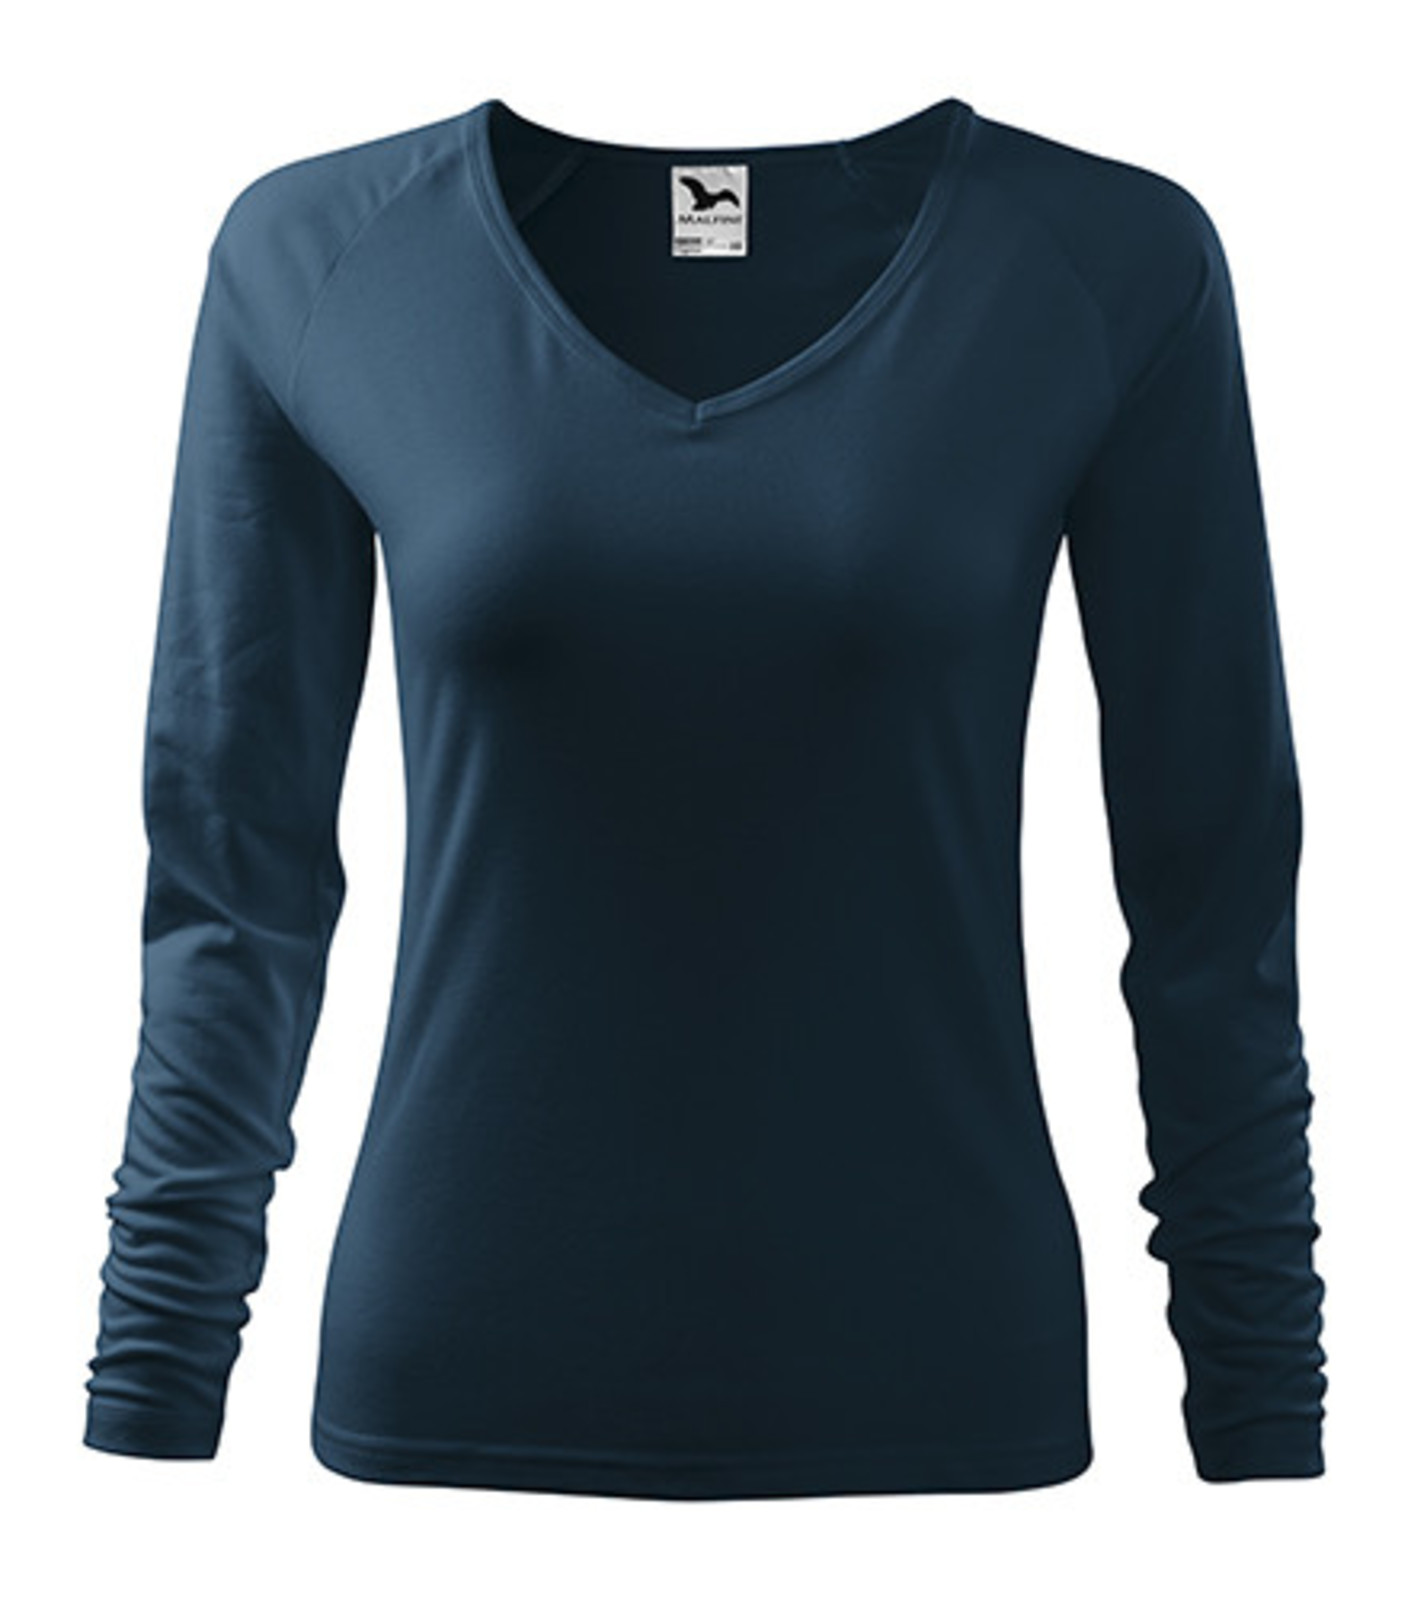 Dámske tričko s dlhým rukávom Adler Elegance 127 - veľkosť: XXL, farba: tmavo modrá